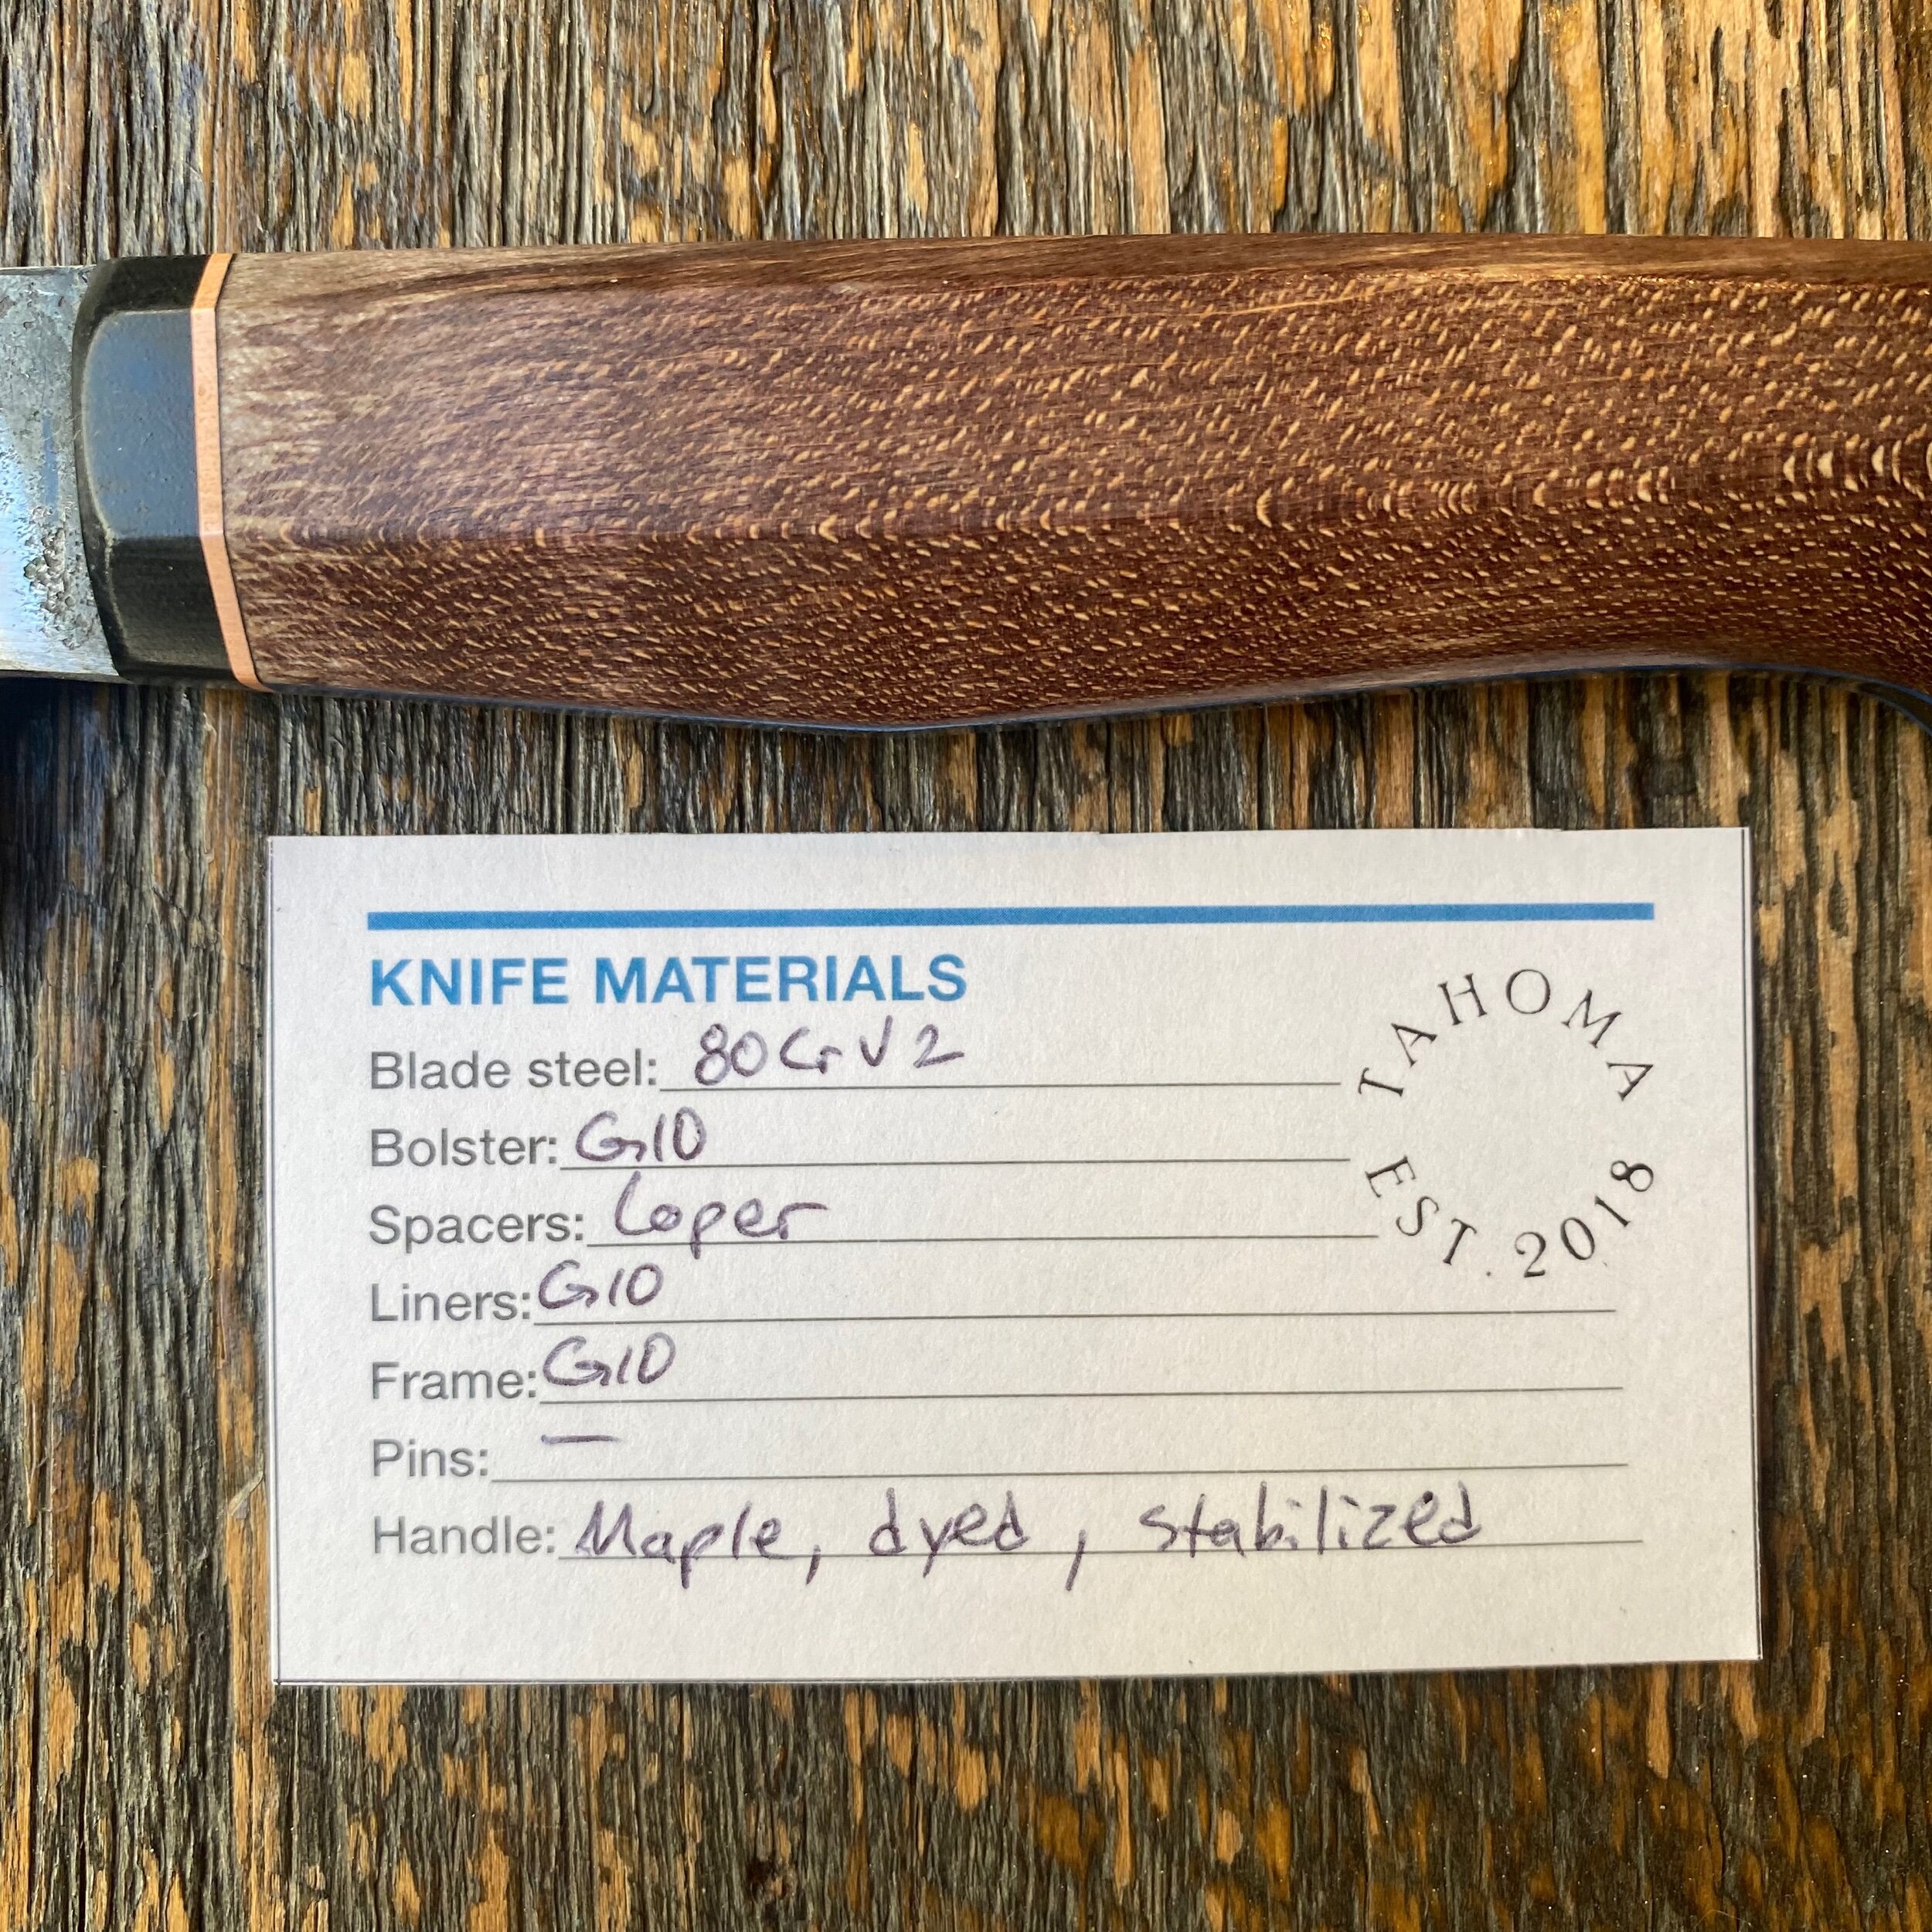 Store 1 — Tahoma Knives